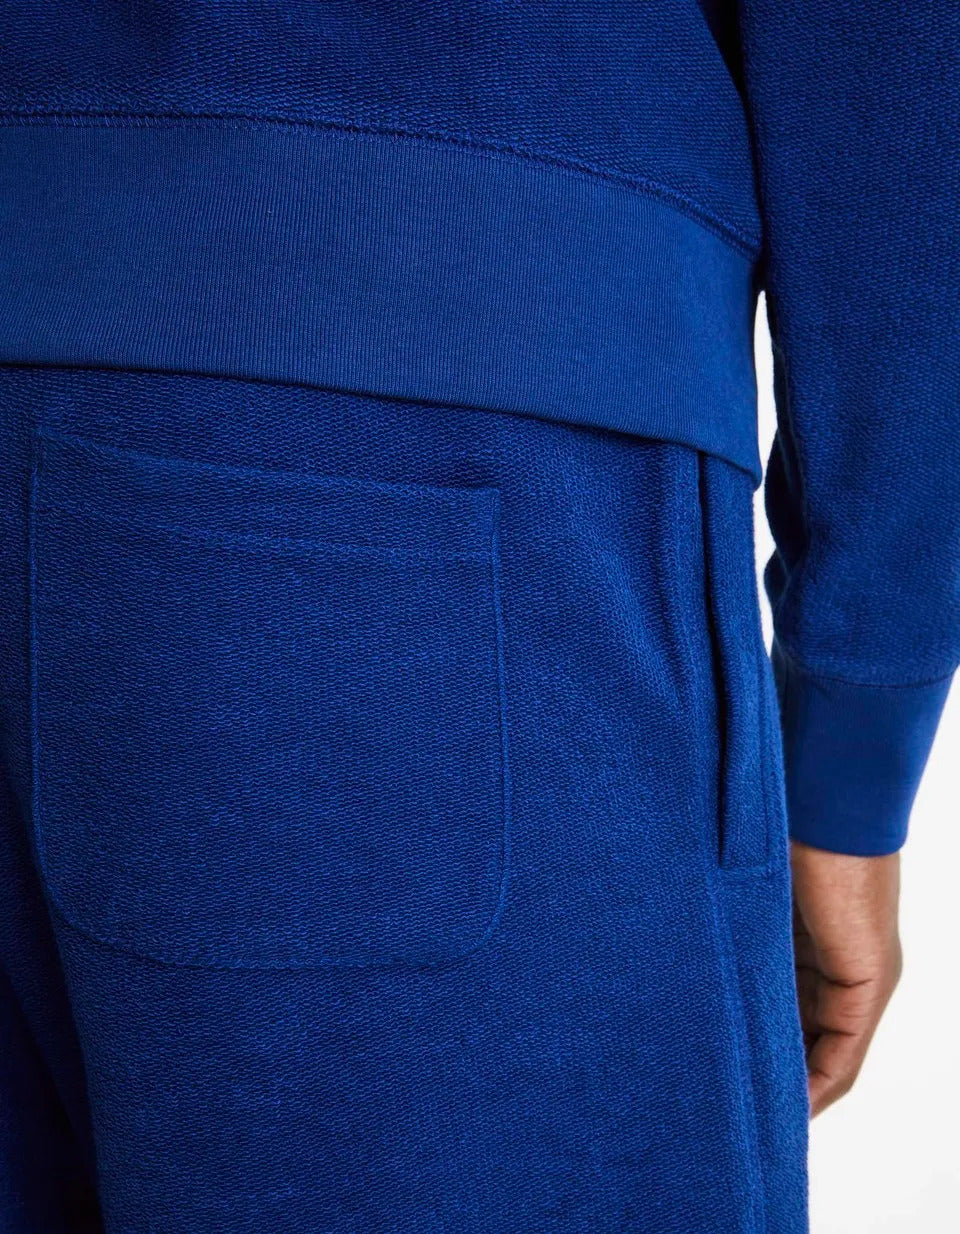 100% Cotton Shorts - Denim Blue - 06